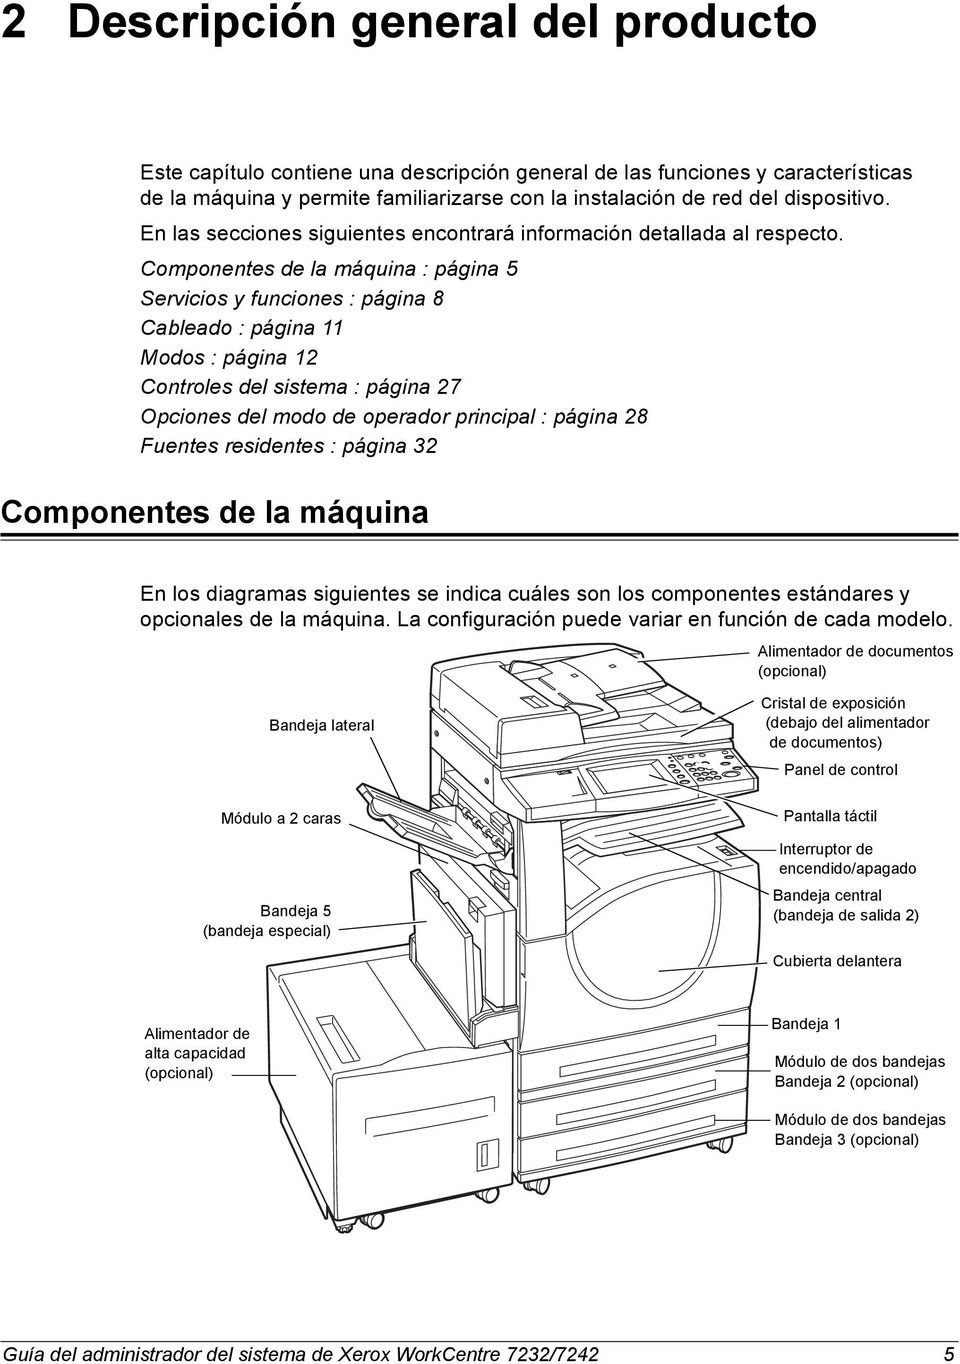 Componentes de la máquina : página 5 Servicios y funciones : página 8 Cableado : página 11 Modos : página 12 Controles del sistema : página 27 Opciones del modo de operador principal : página 28